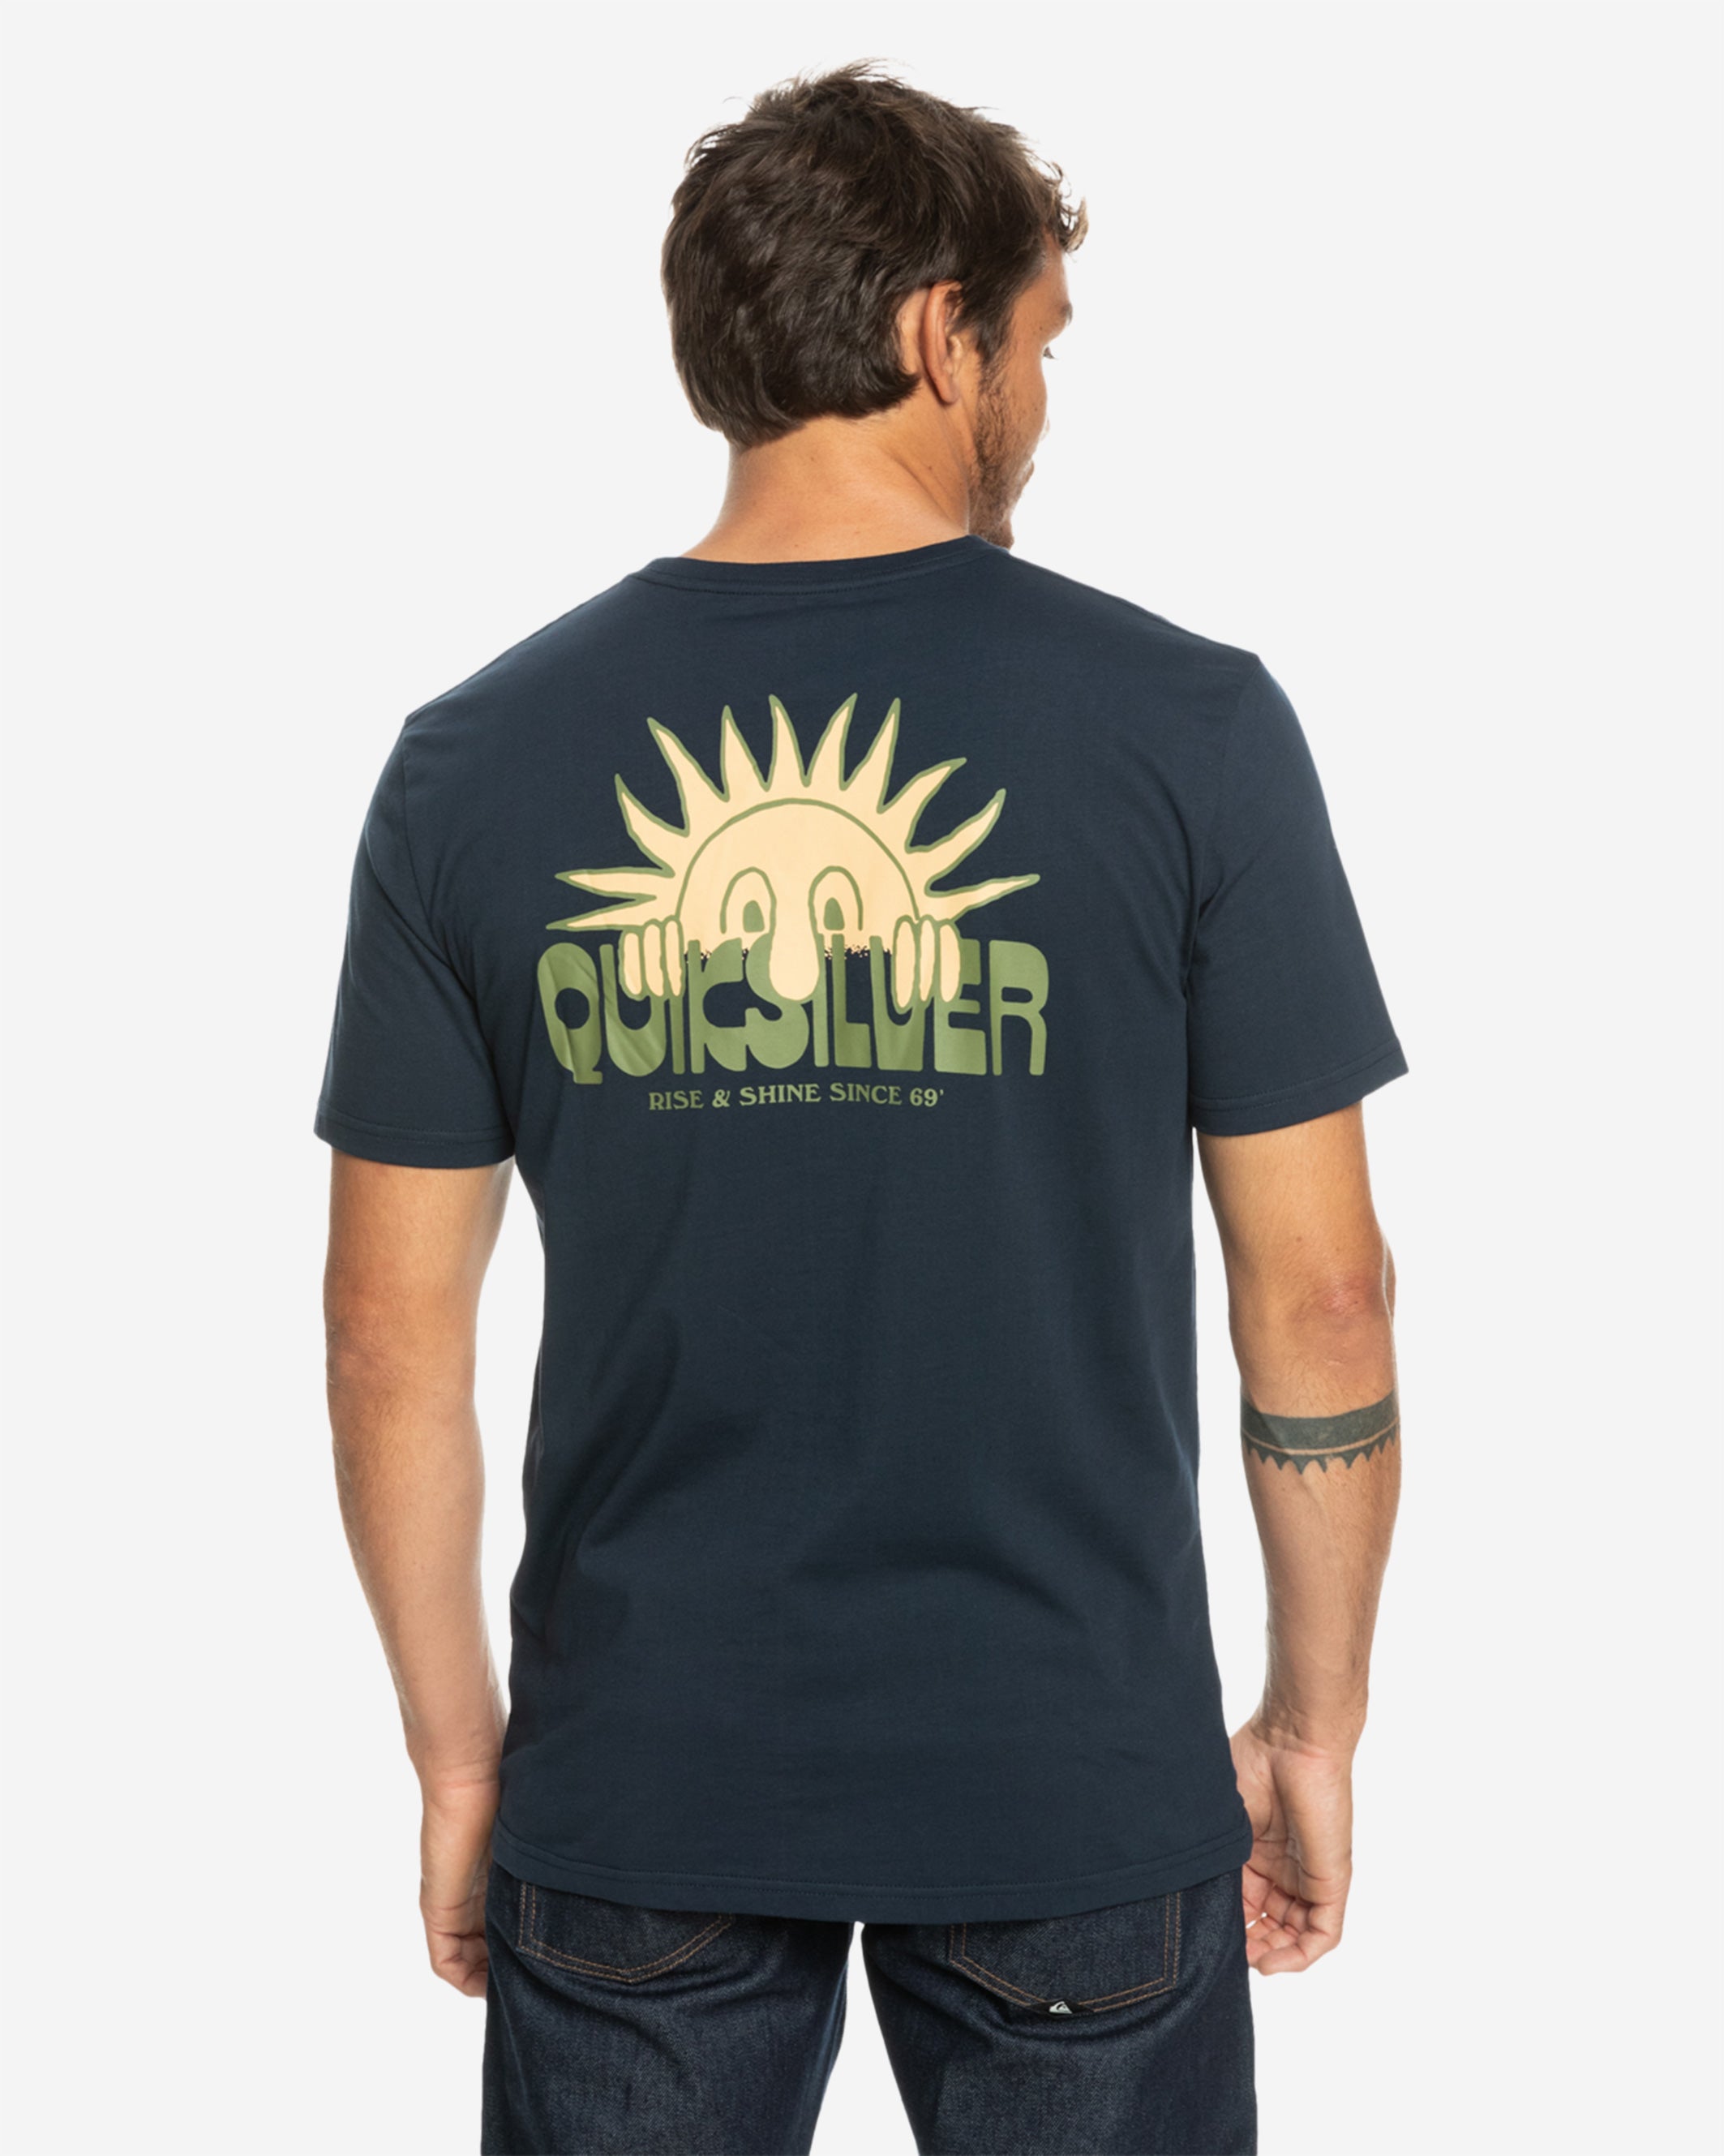 Quiksilver - Rise HUHET T-Shirt Shine & –